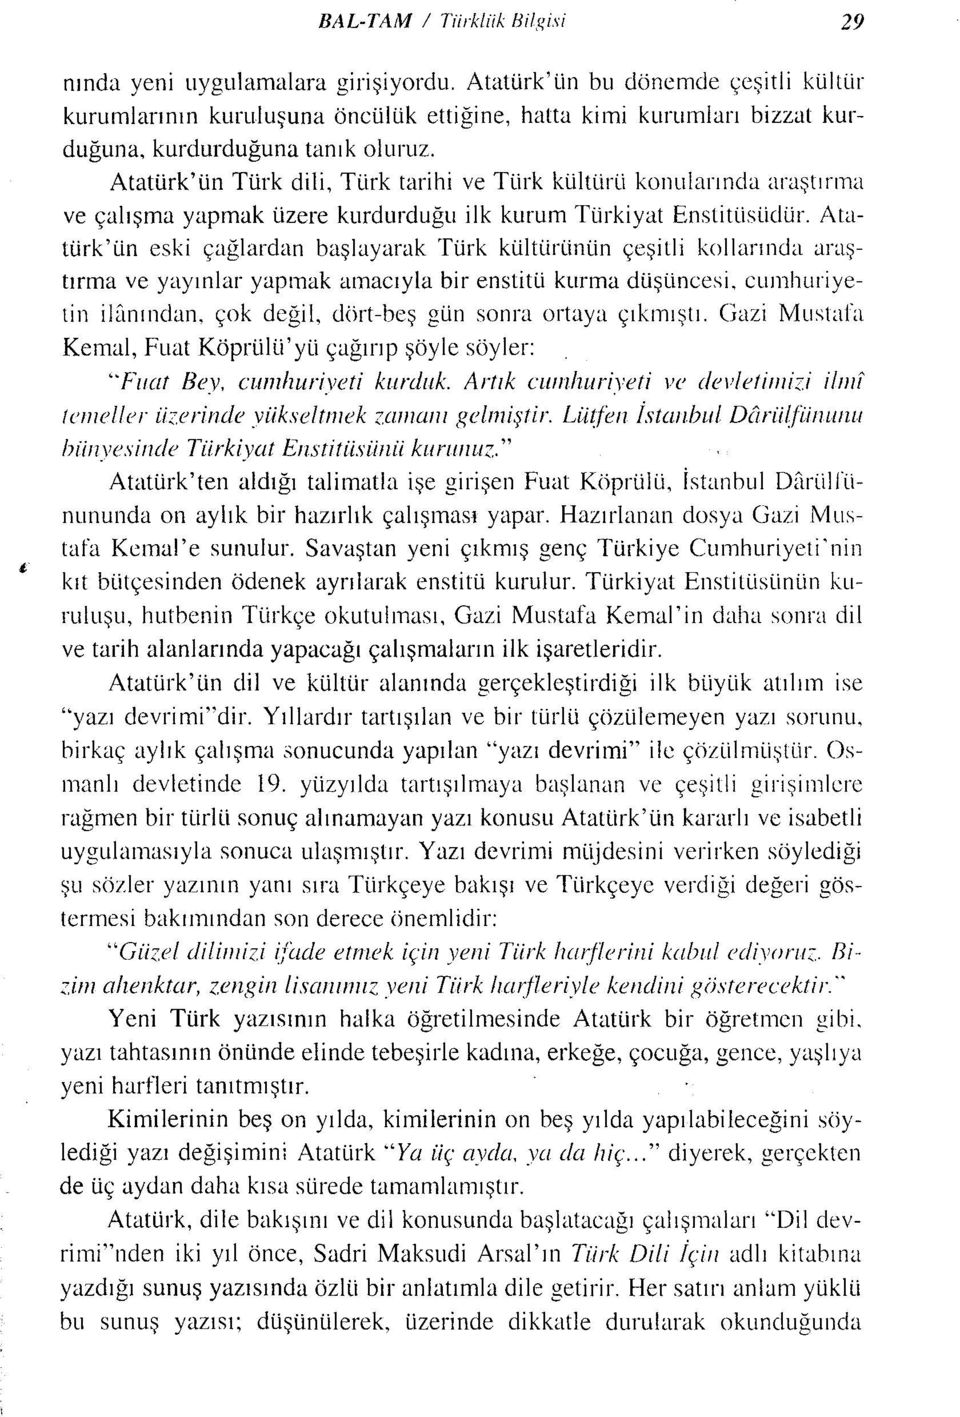 Atatürk'ün Türk dili, Türk tarihi ve Türk kültürü konularında araştırma ve çalışma yapmak üzere kurdurduğu ilk kurum Türkiyat Enstitüsüdür.